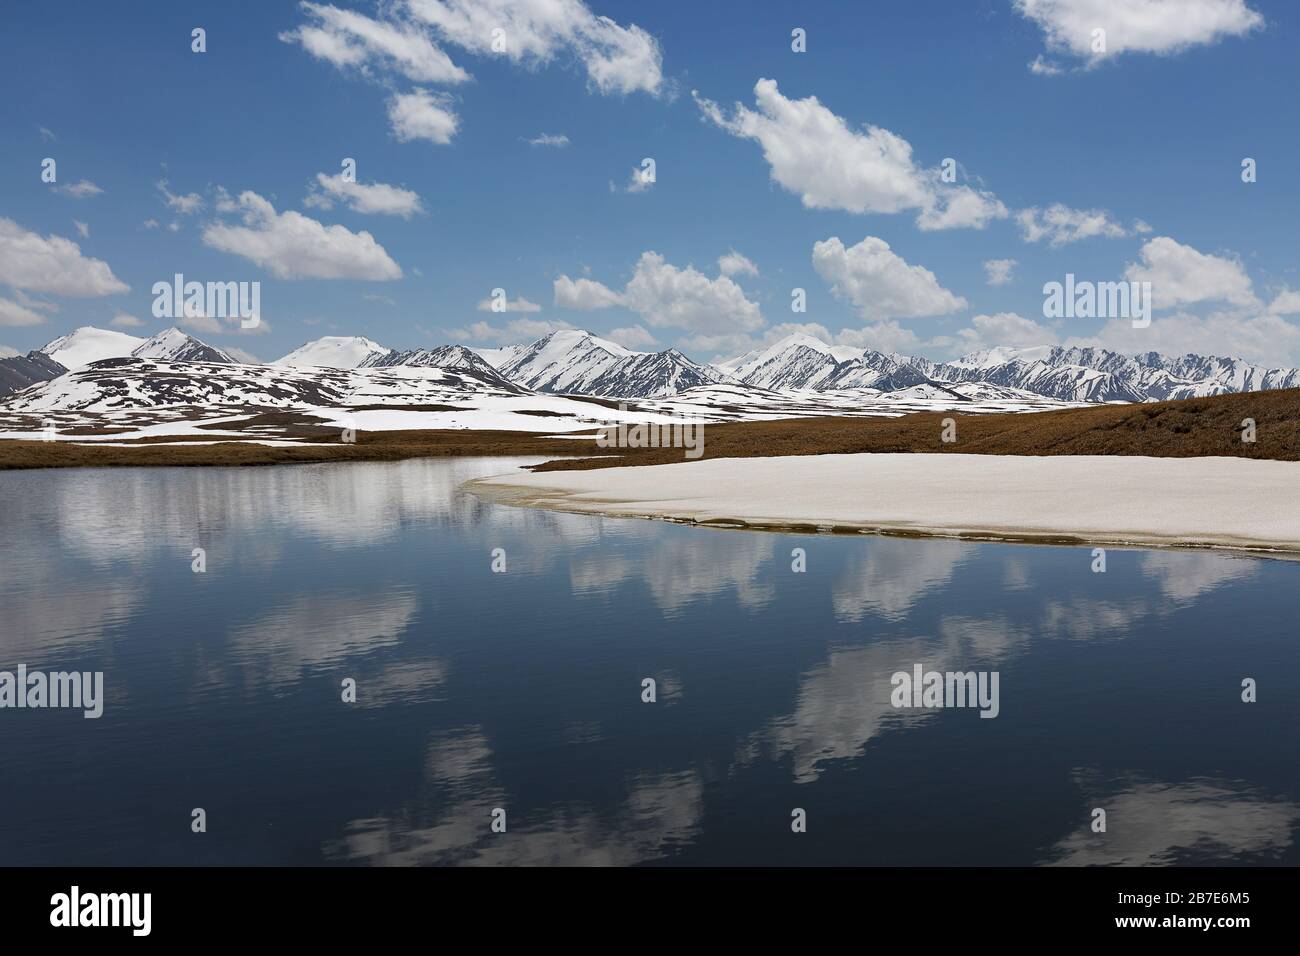 Lac de montagne au sommet des montagnes de Barskaun, avec des réflexions dans l'eau au Kirghizstan Banque D'Images